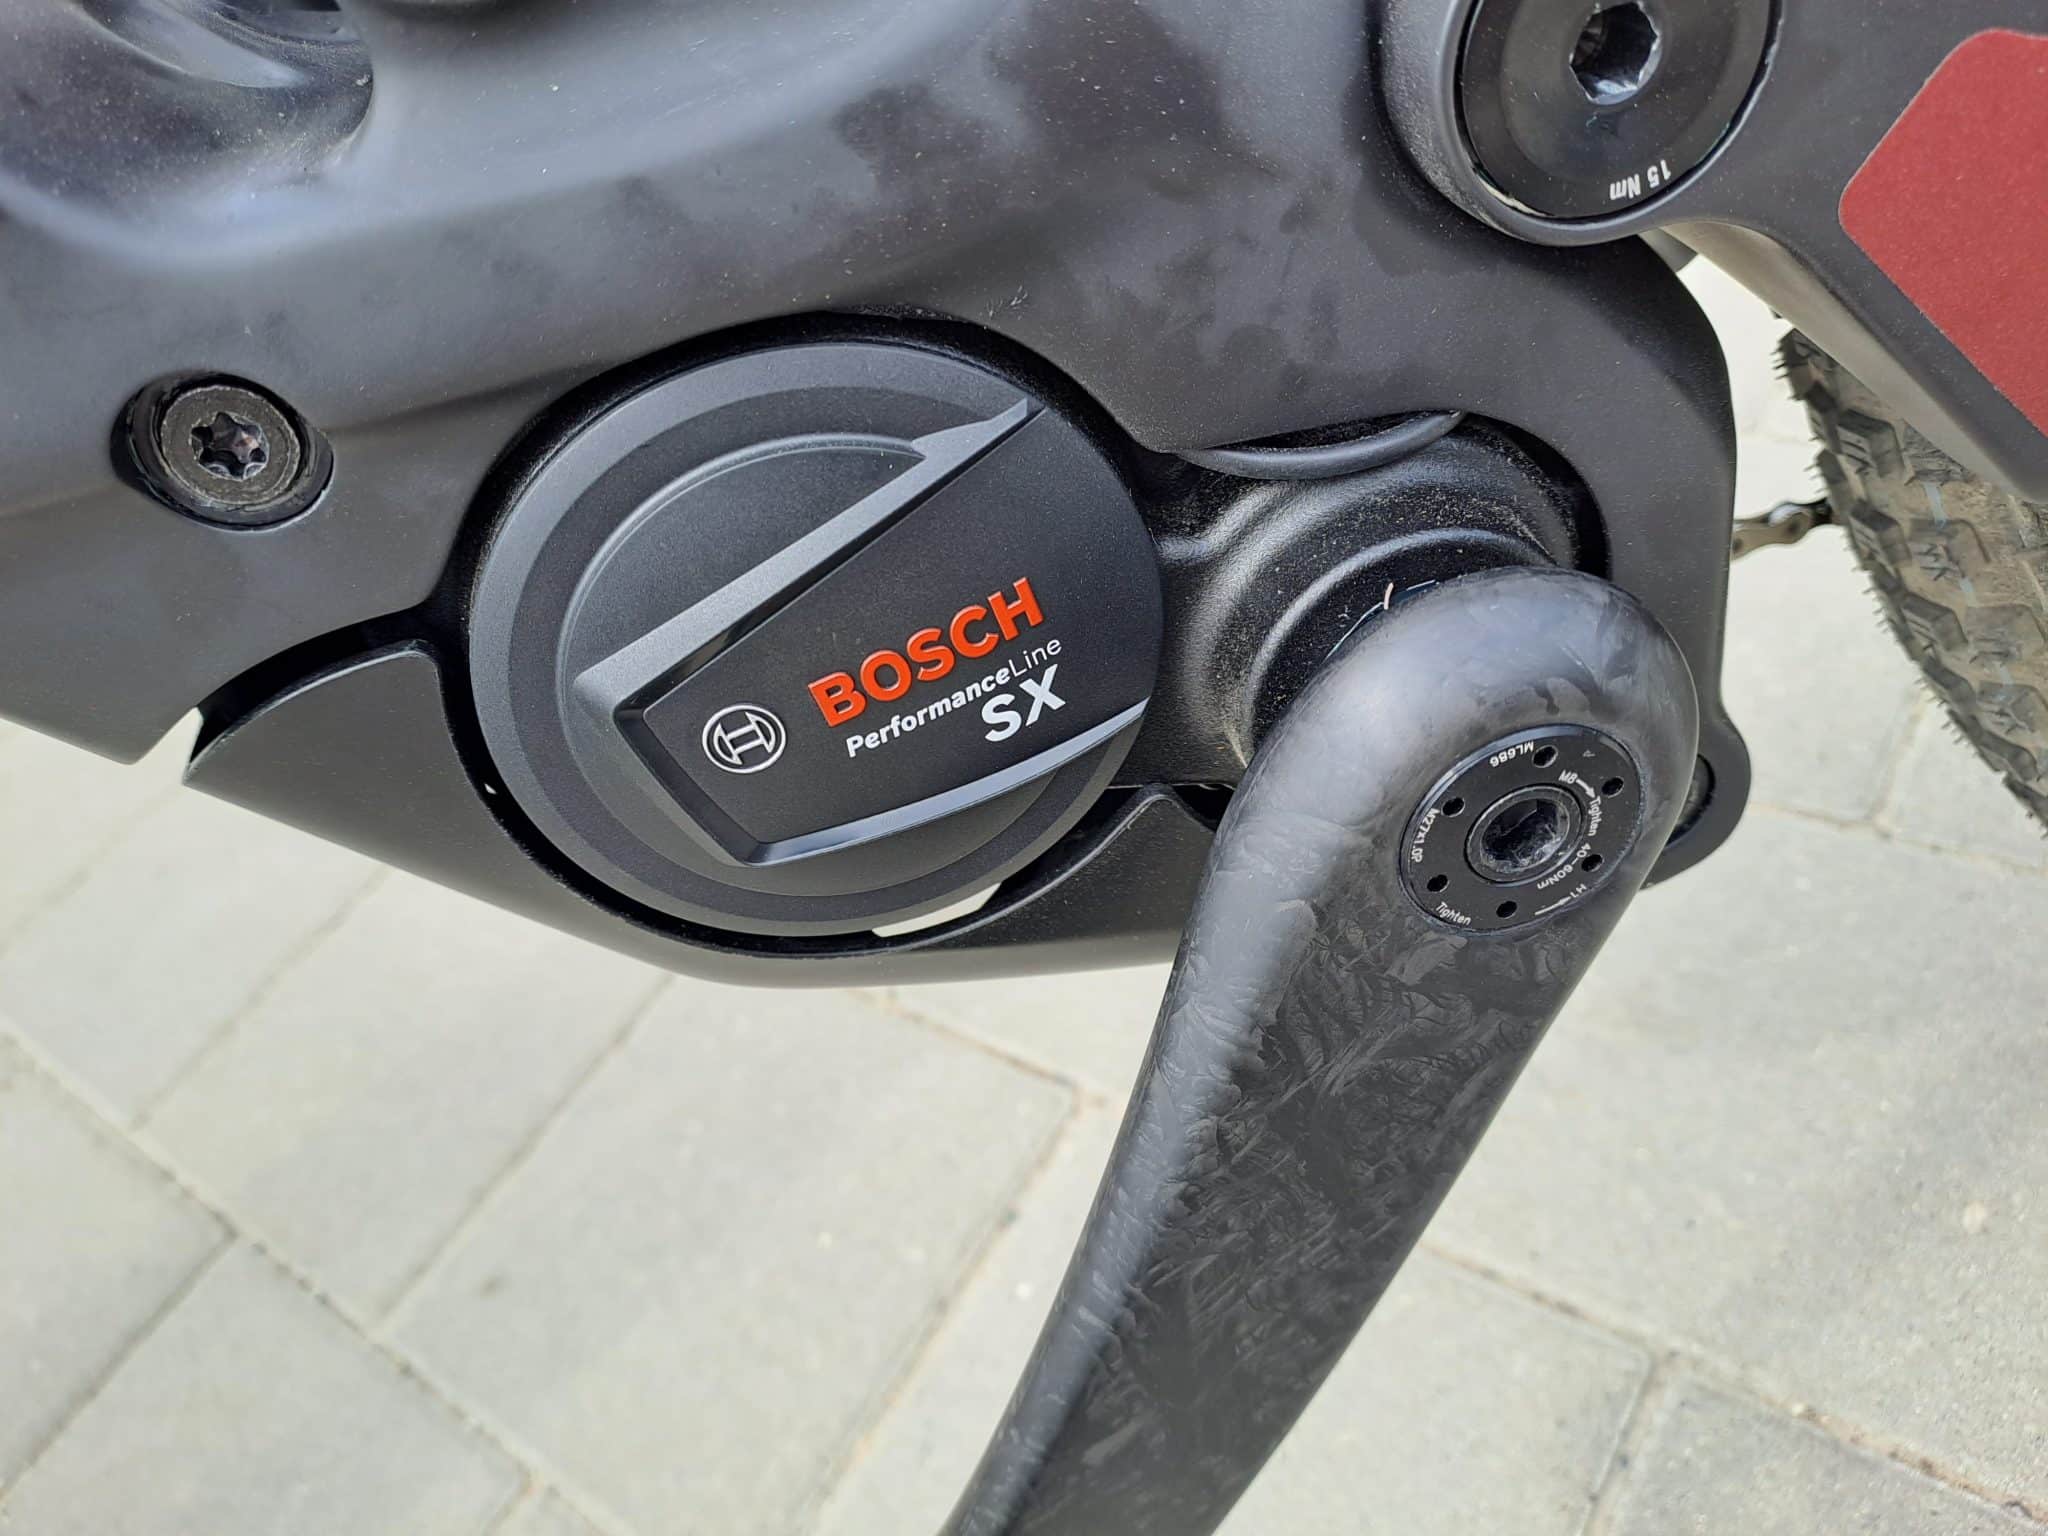 Bosch SX - eBikeNews